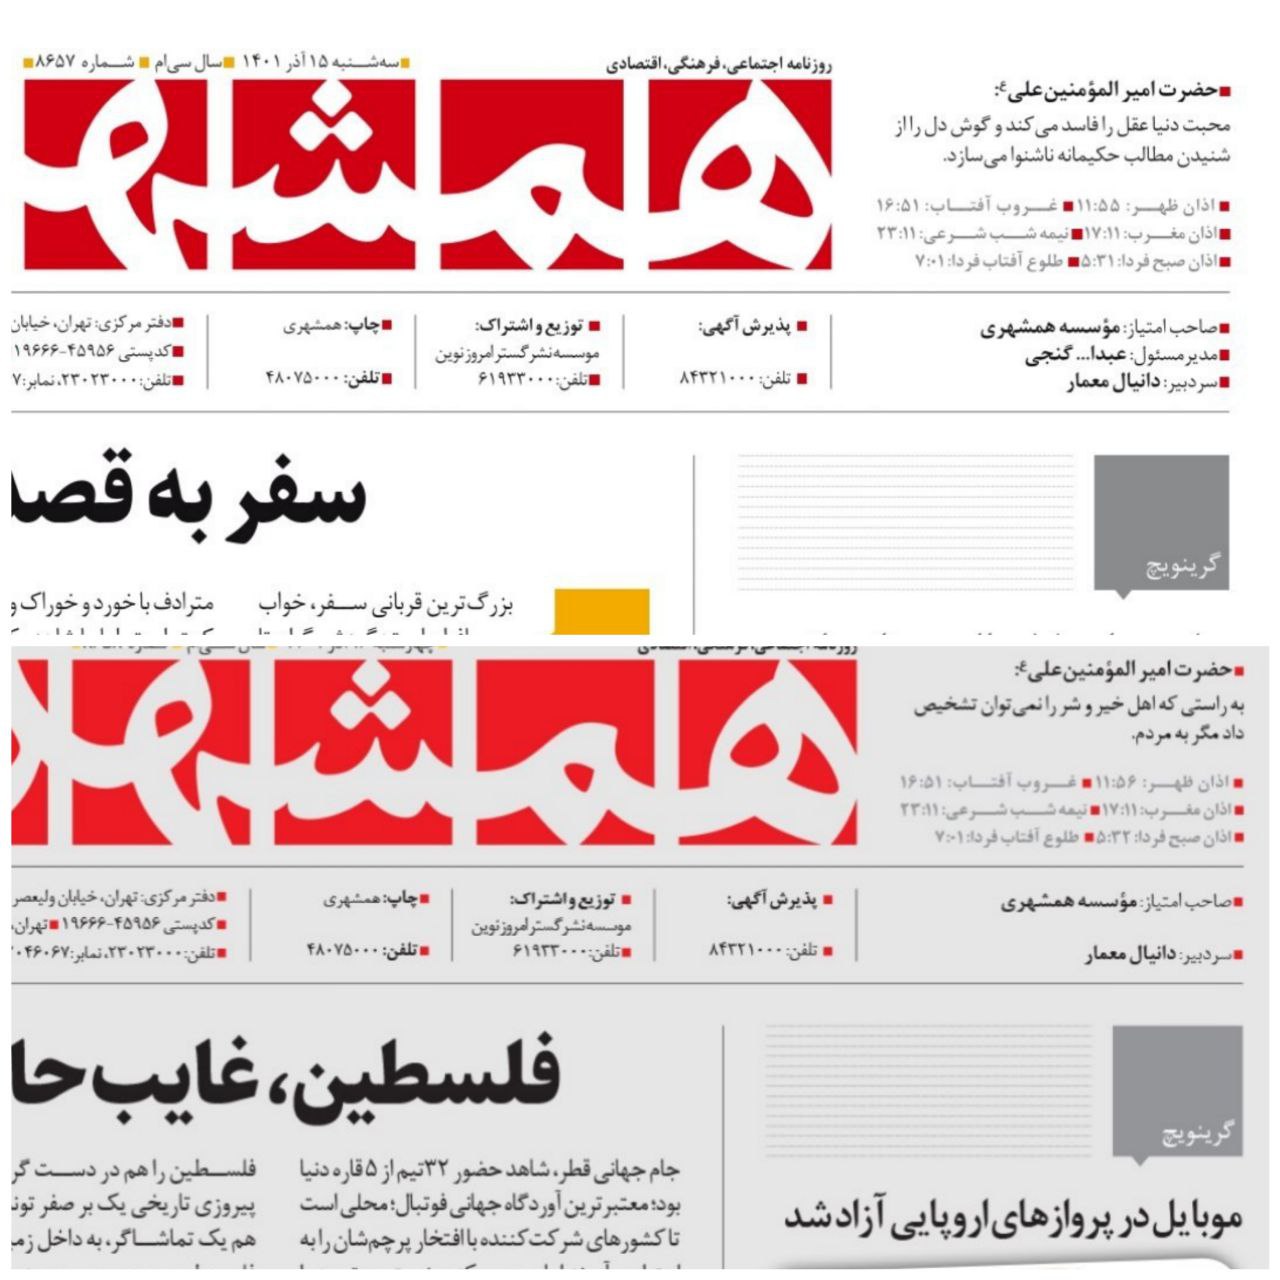 نام عبدالله گنجی از روزنامه همشهری حذف شد